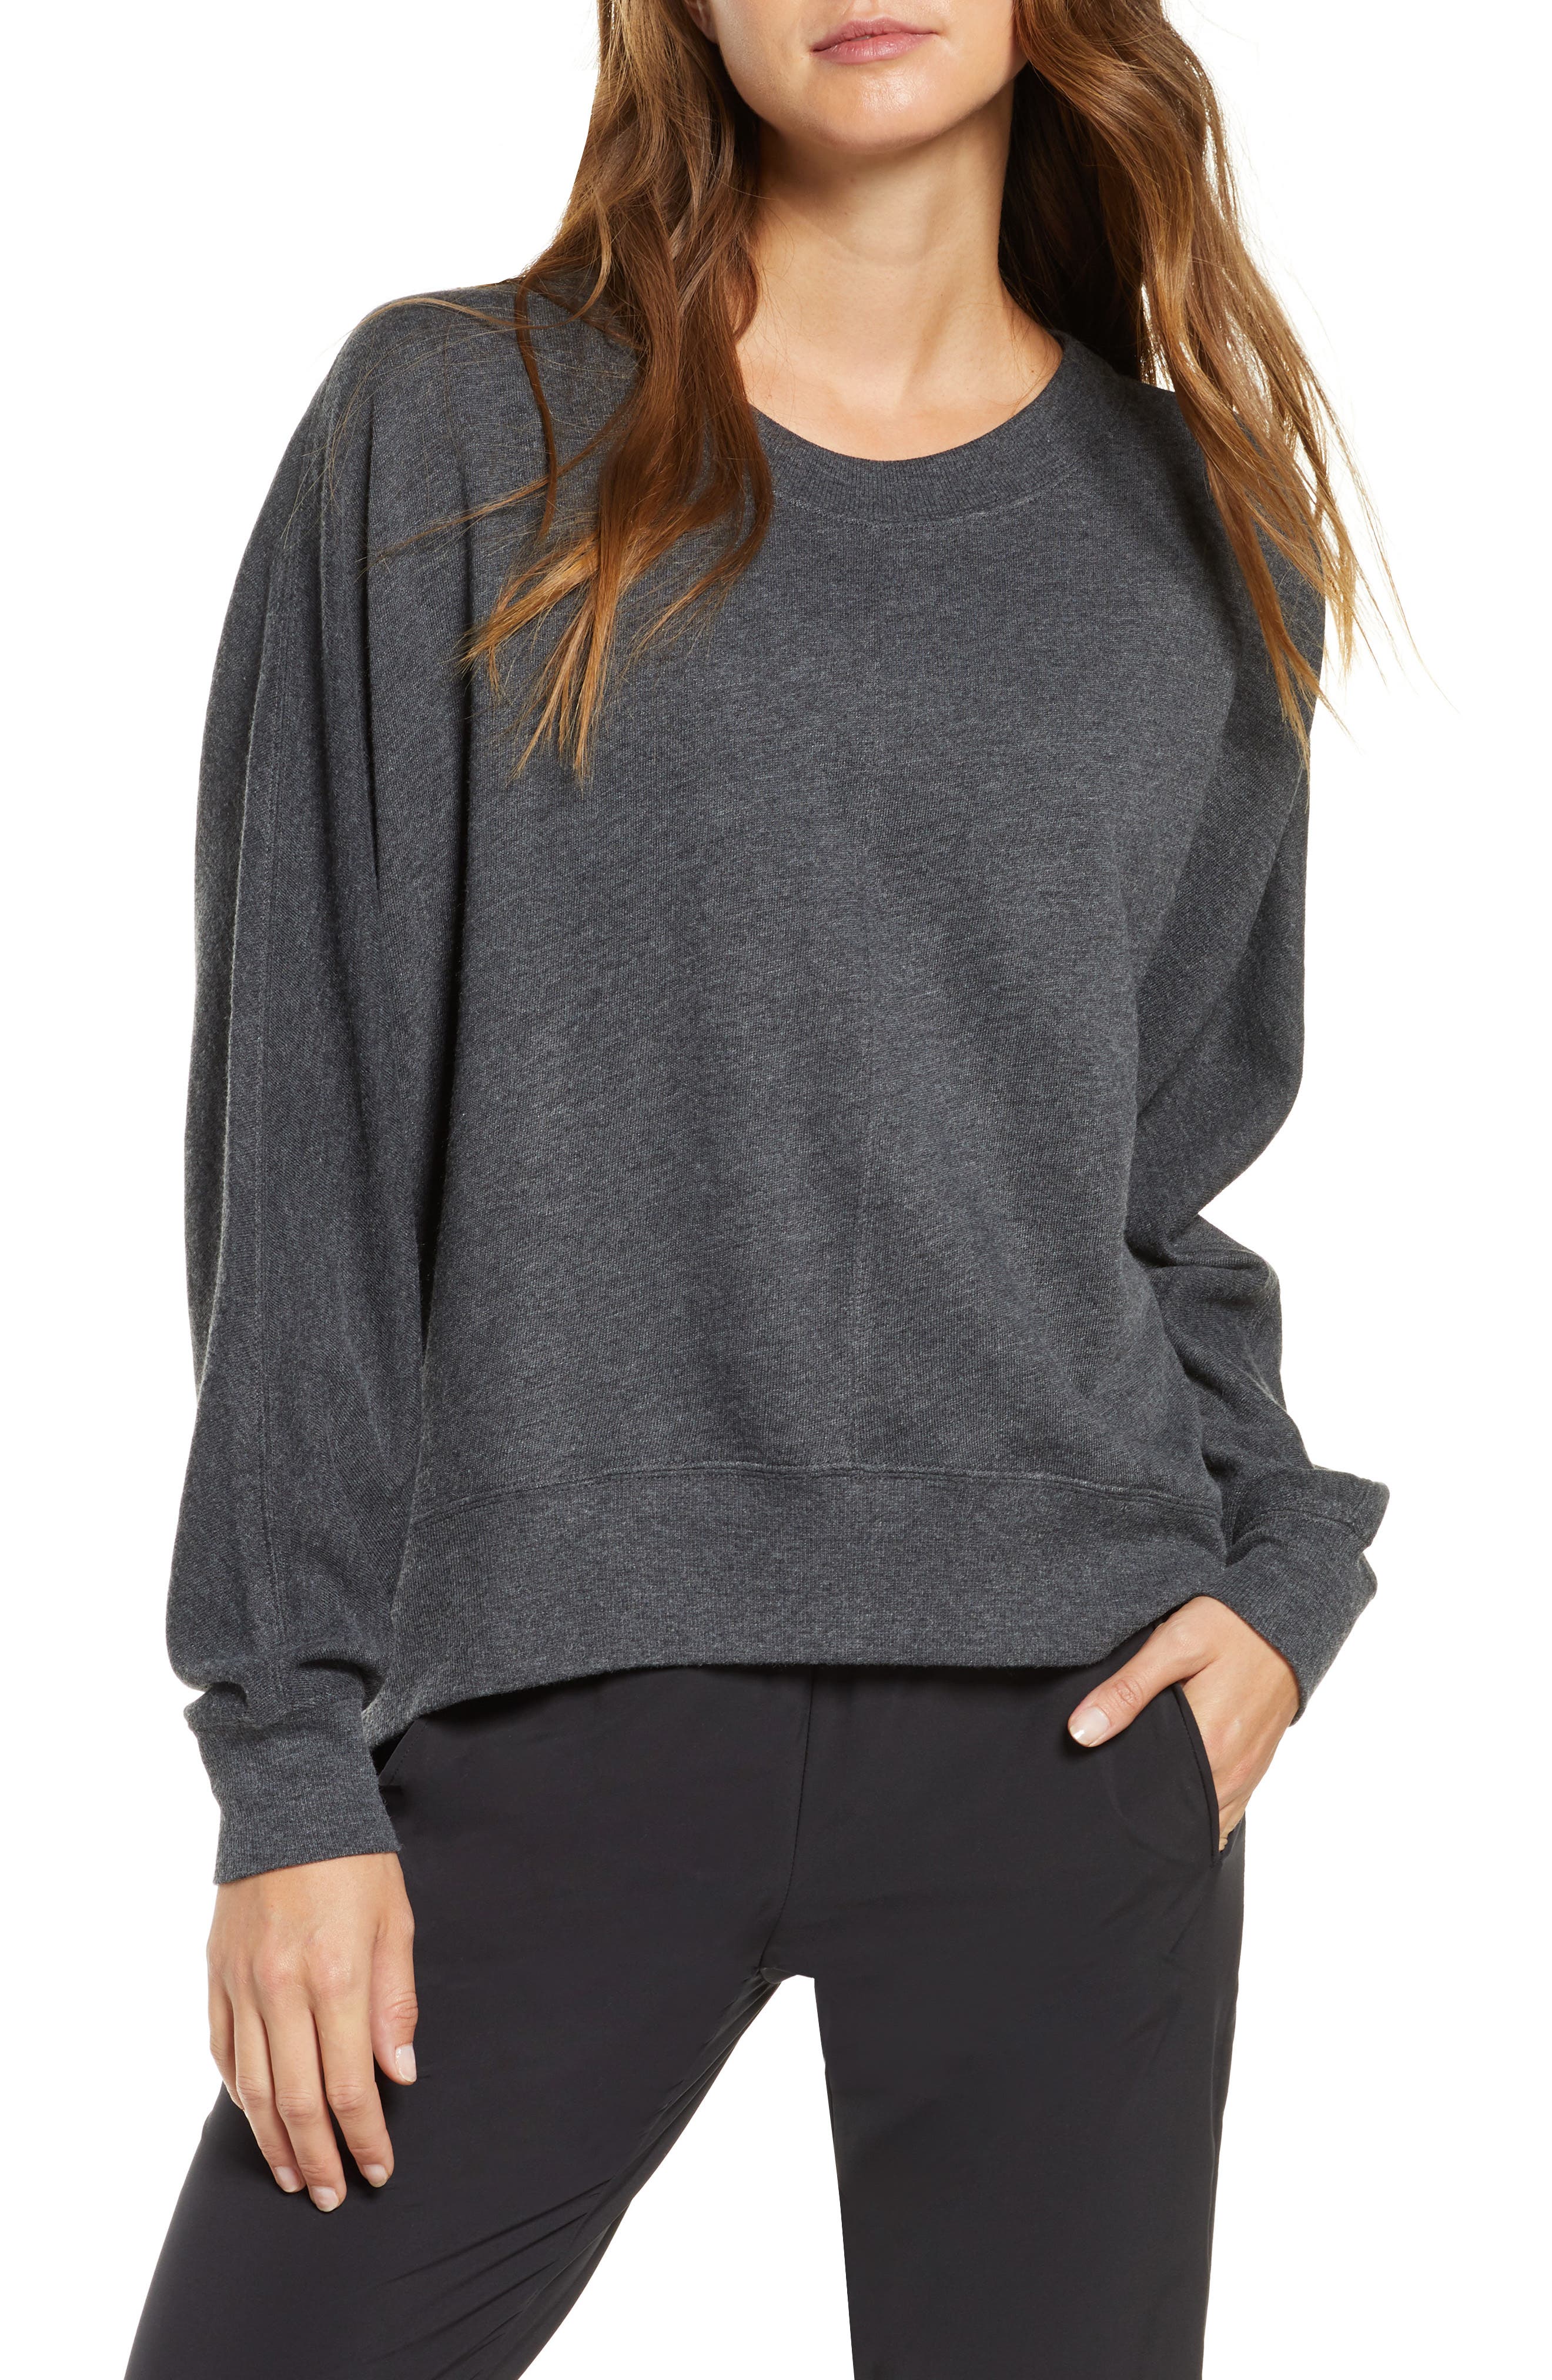 Top Selling Jerseys Women sweatshirts